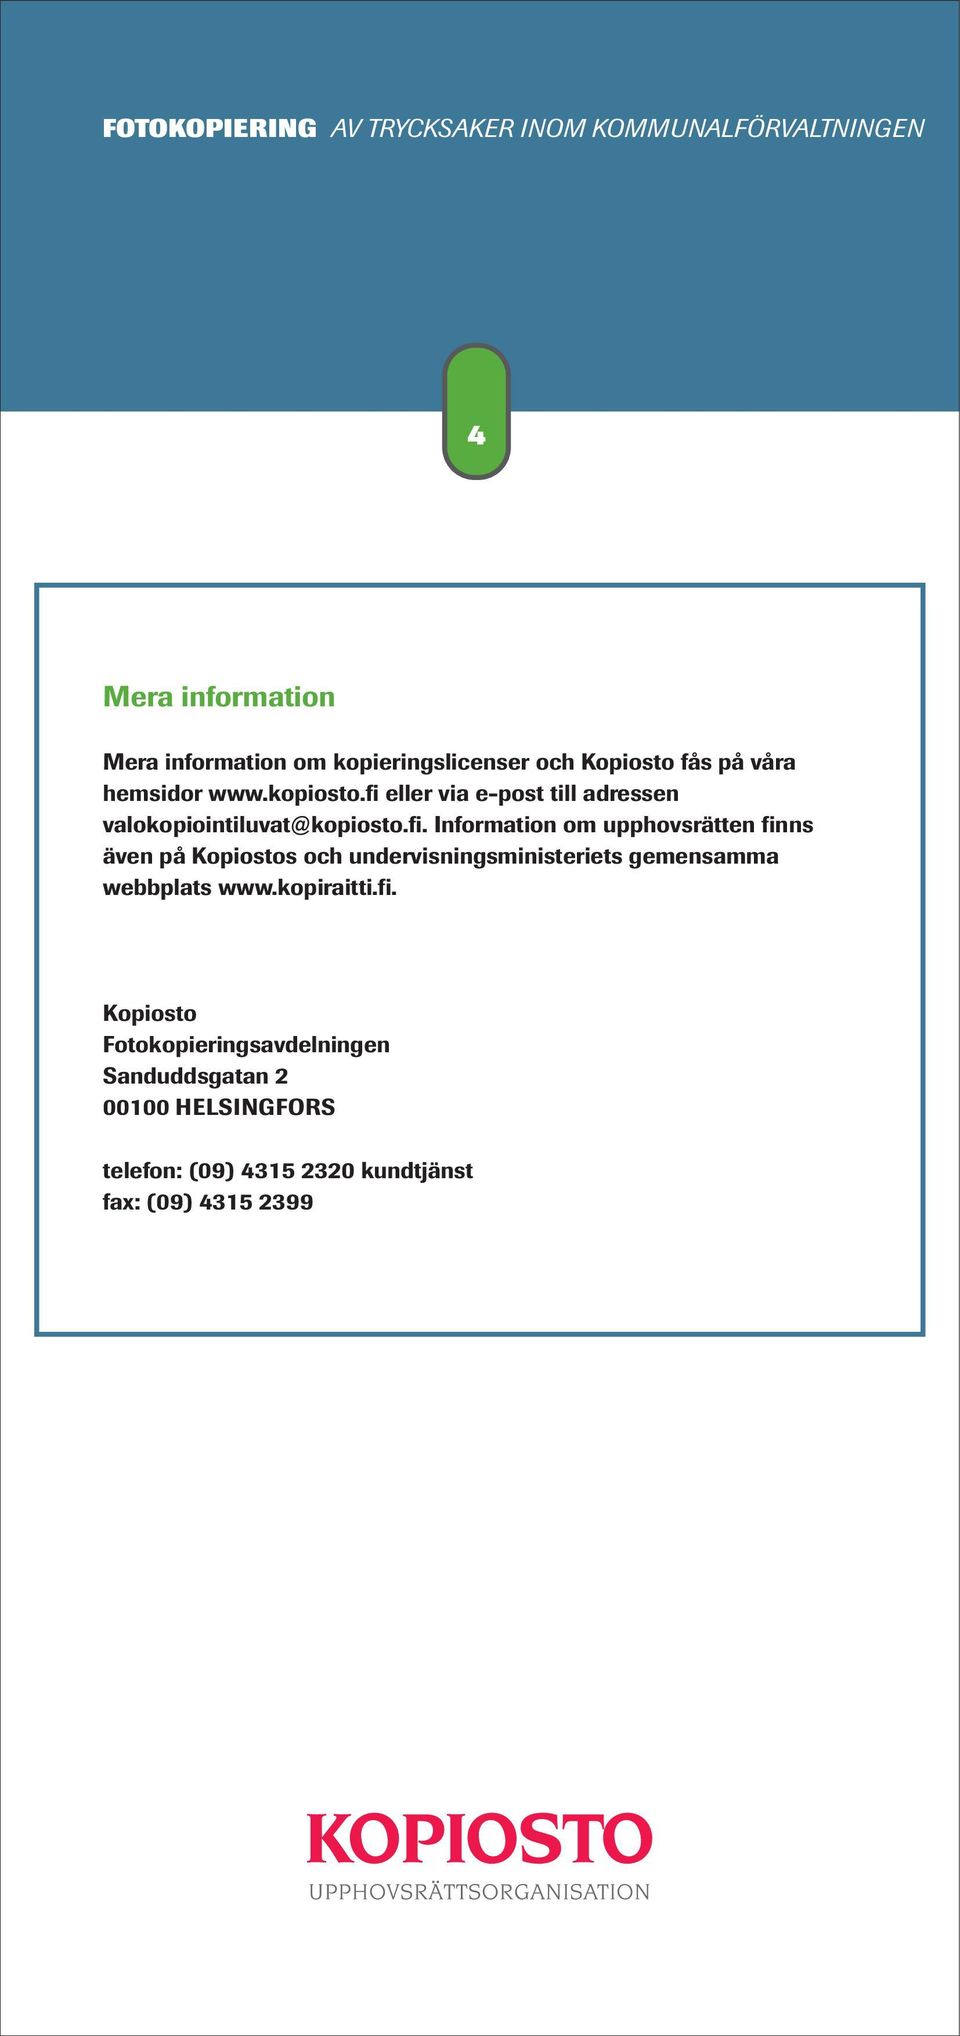 även på Kopiostos och undervisningsministeriets gemensamma webbplats www.kopiraitti.fi.